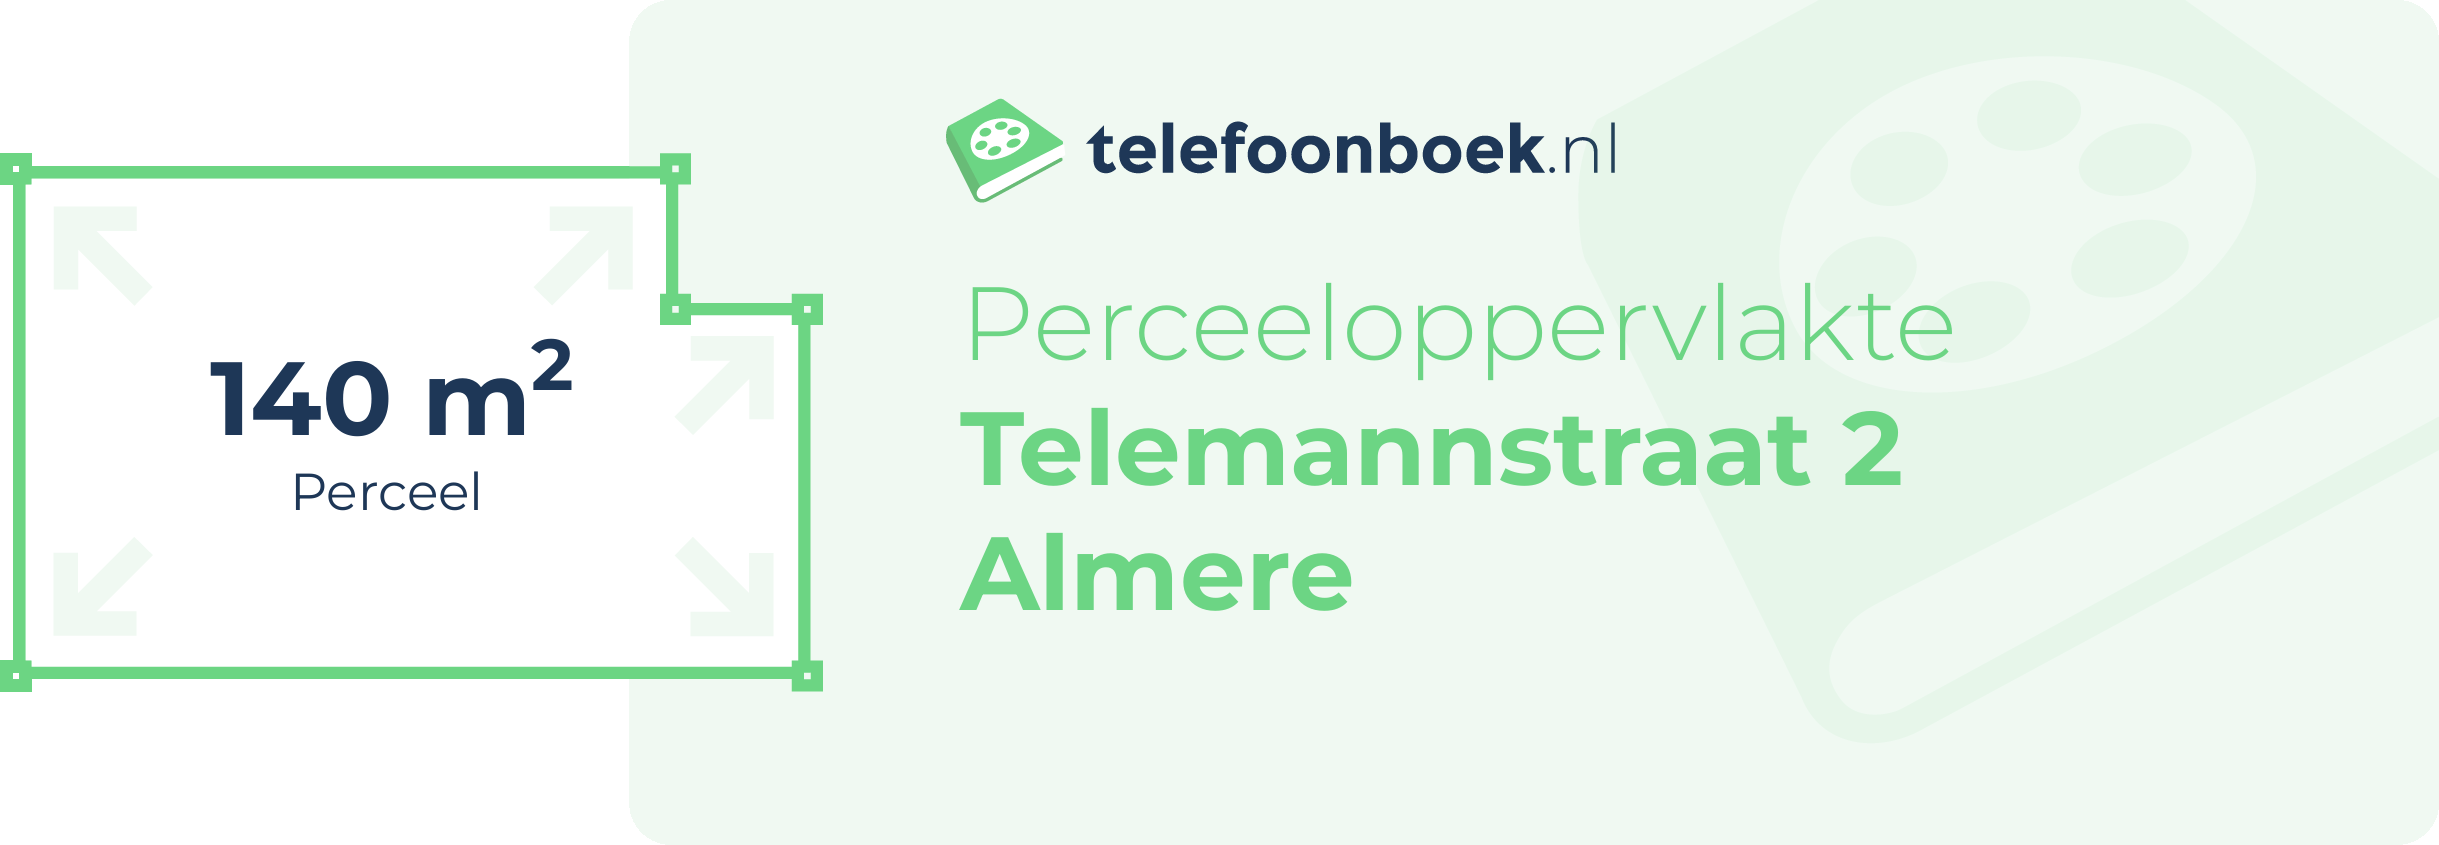 Perceeloppervlakte Telemannstraat 2 Almere